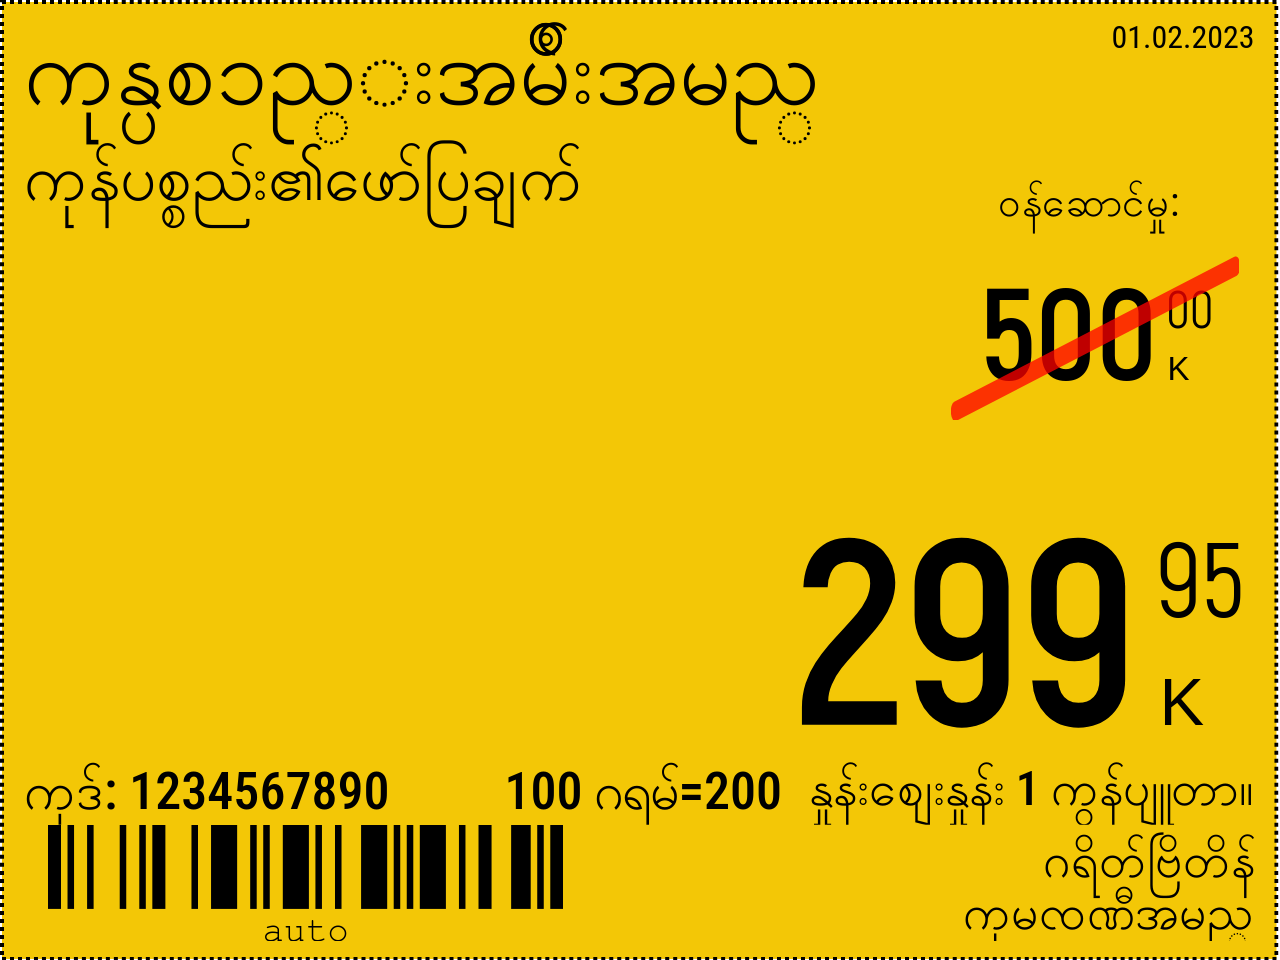 မြန်မာဘာသာ အသစ် / 8x6 / နောက်ခံနှင့်အတူမြှင့်တင်ရေးစျေးနှုန်းမှတ်သားခြင်း